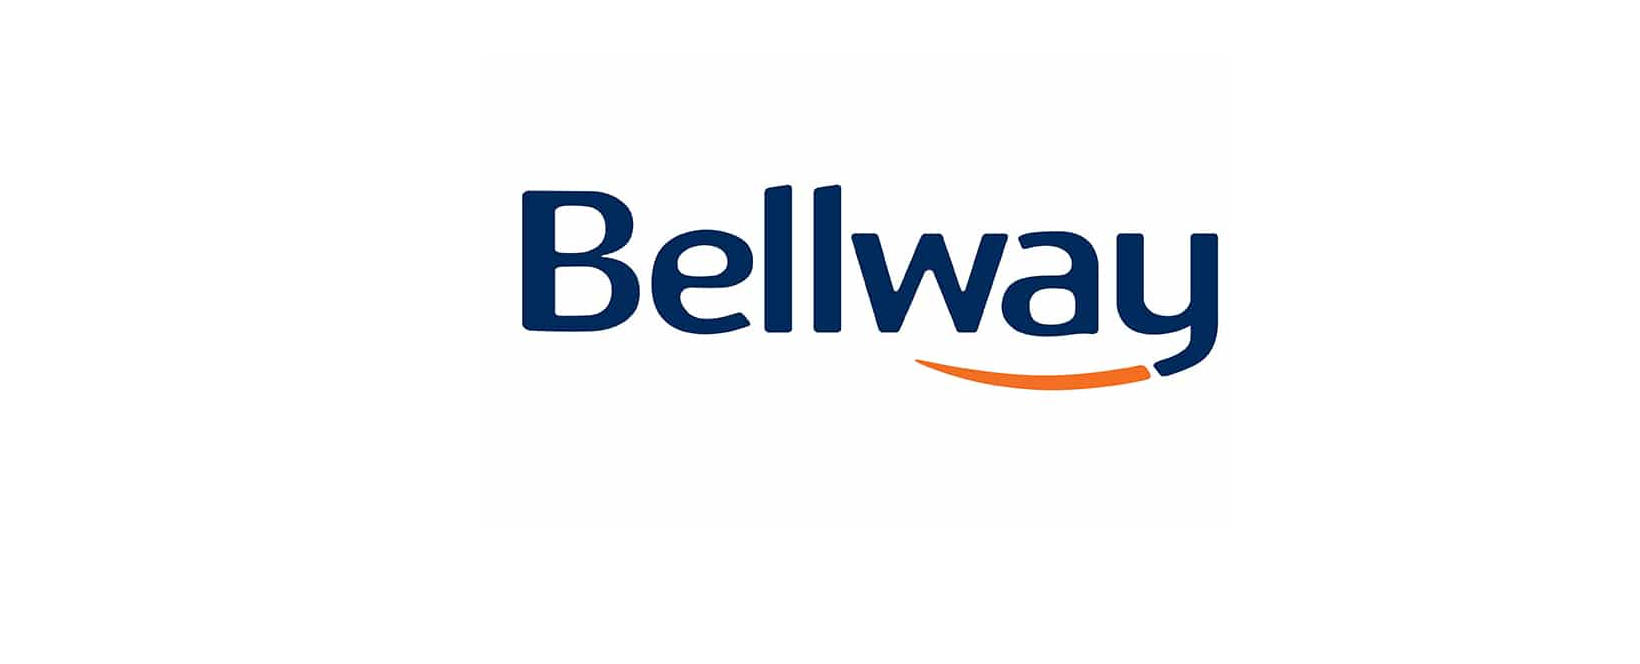 Bellway Discount Code 2022